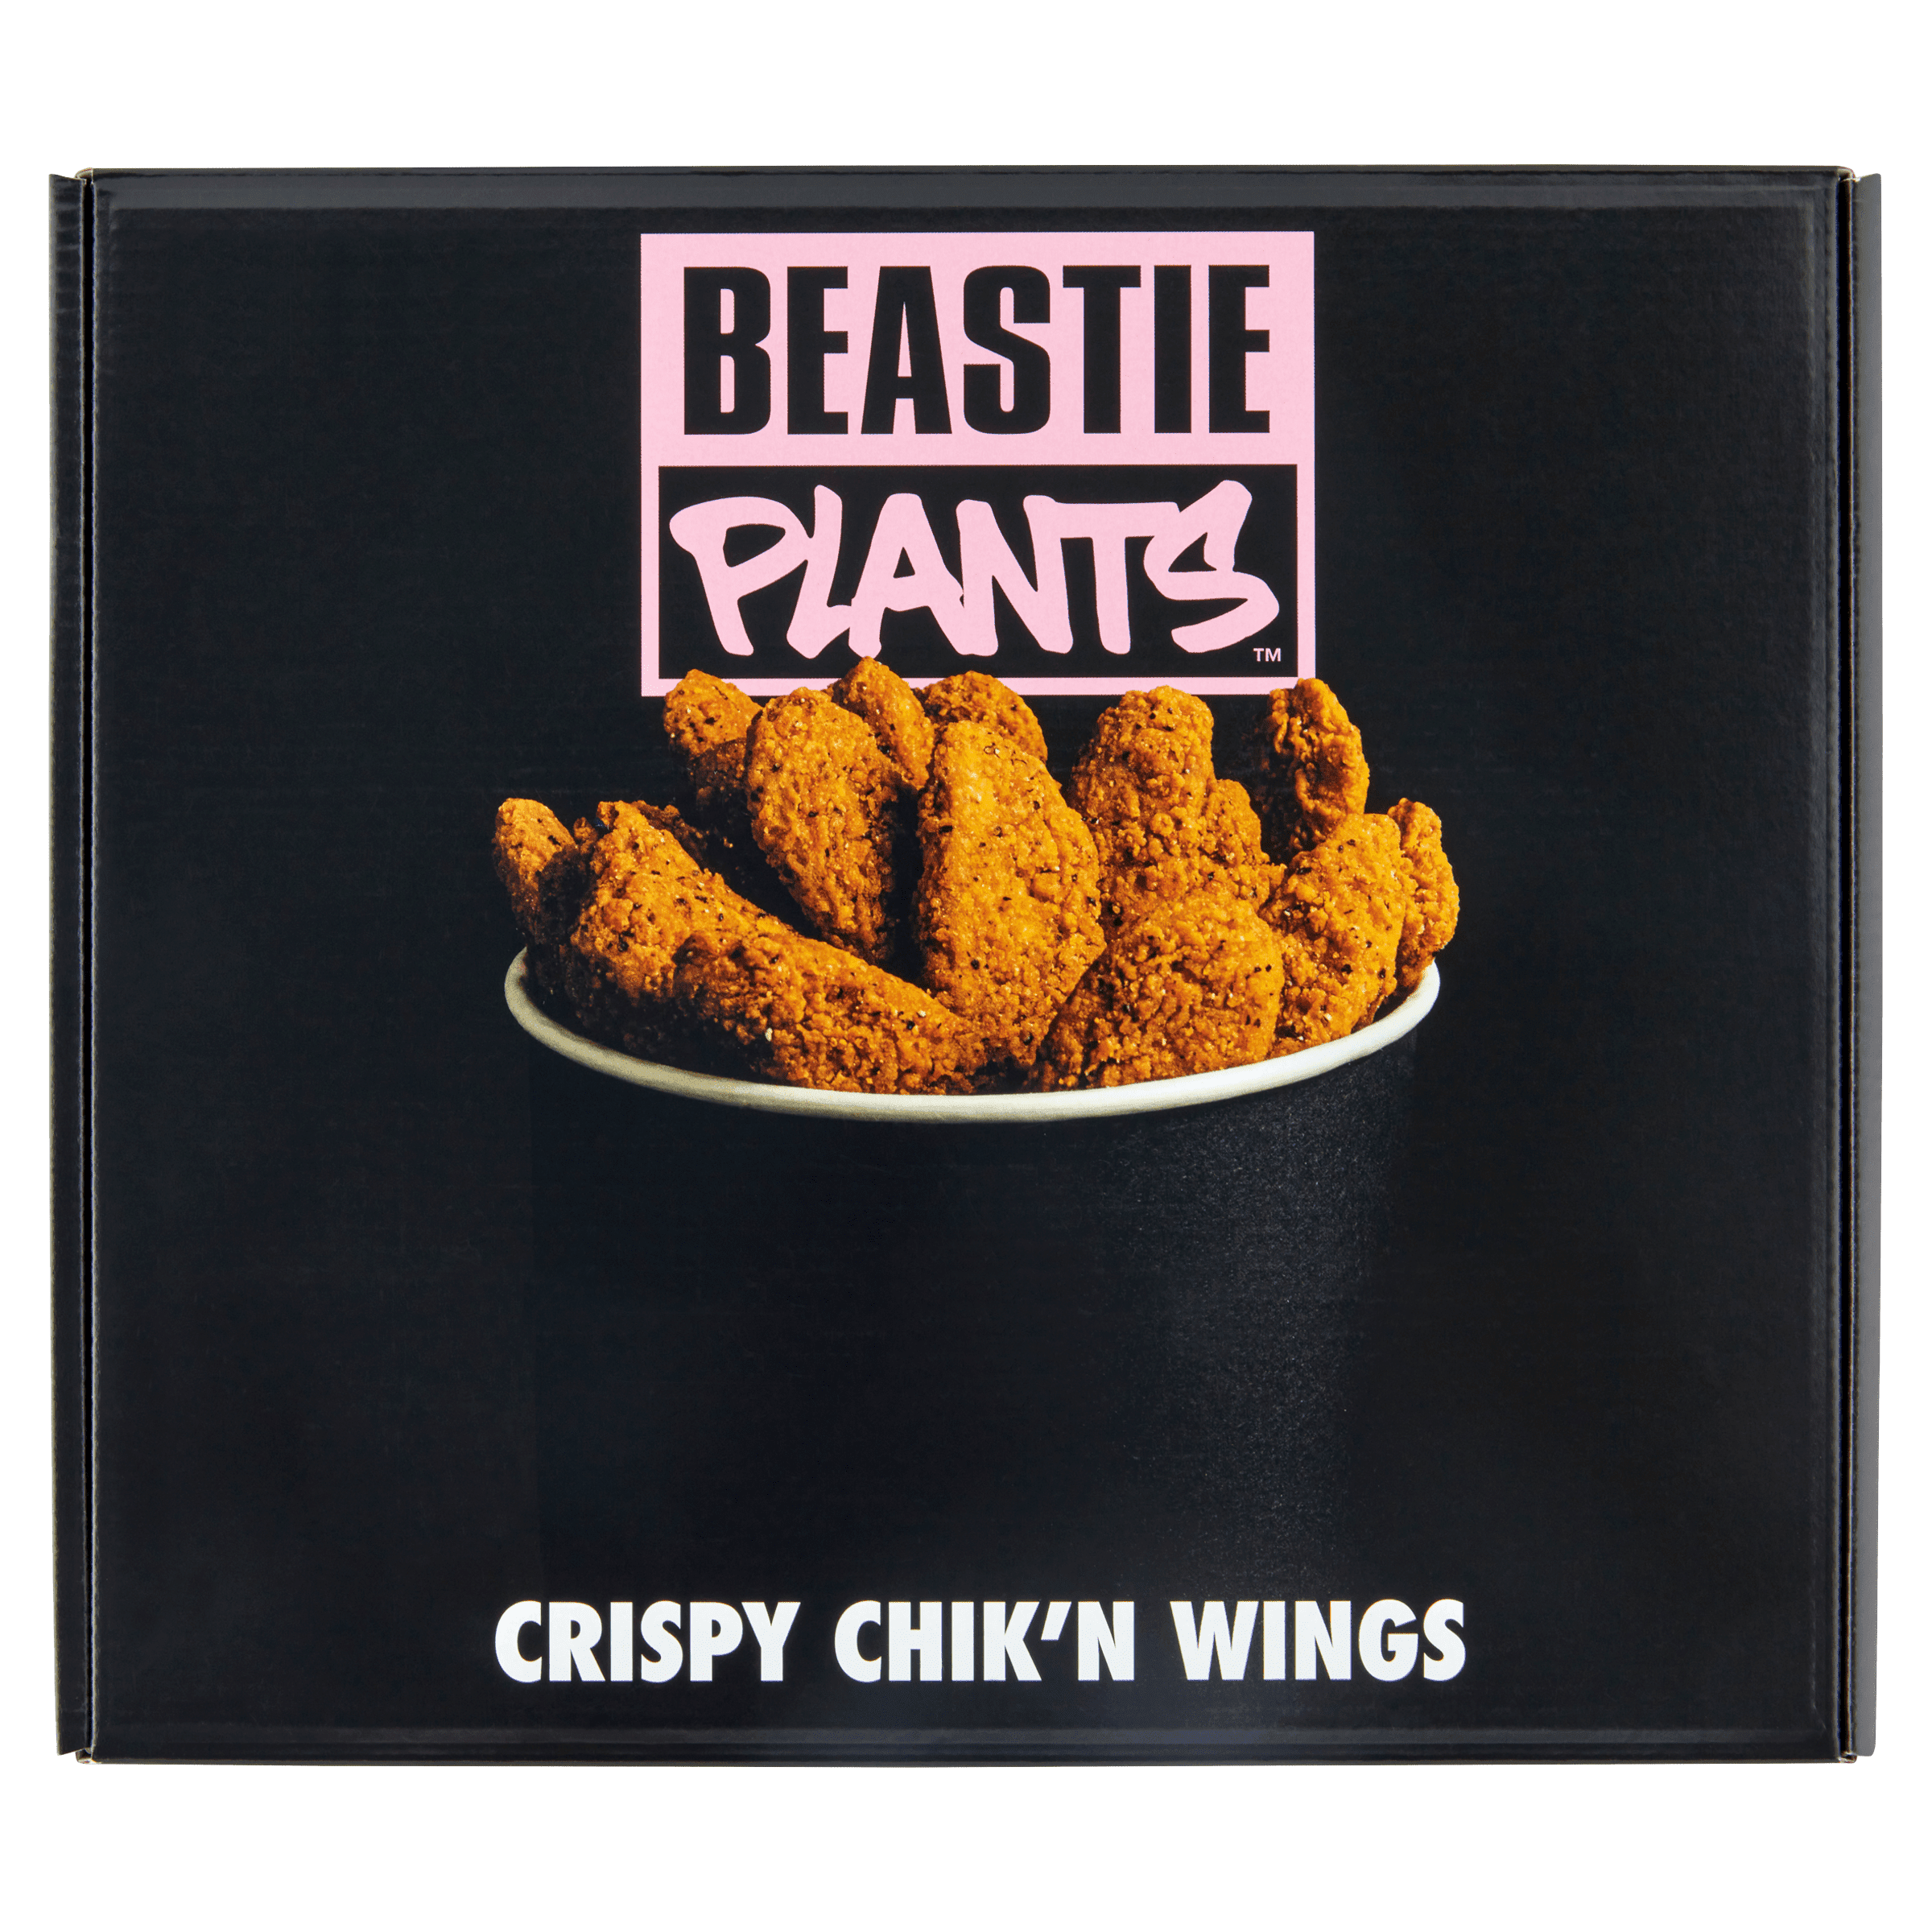 Beastie Plants - Crispy Chik'n Wings